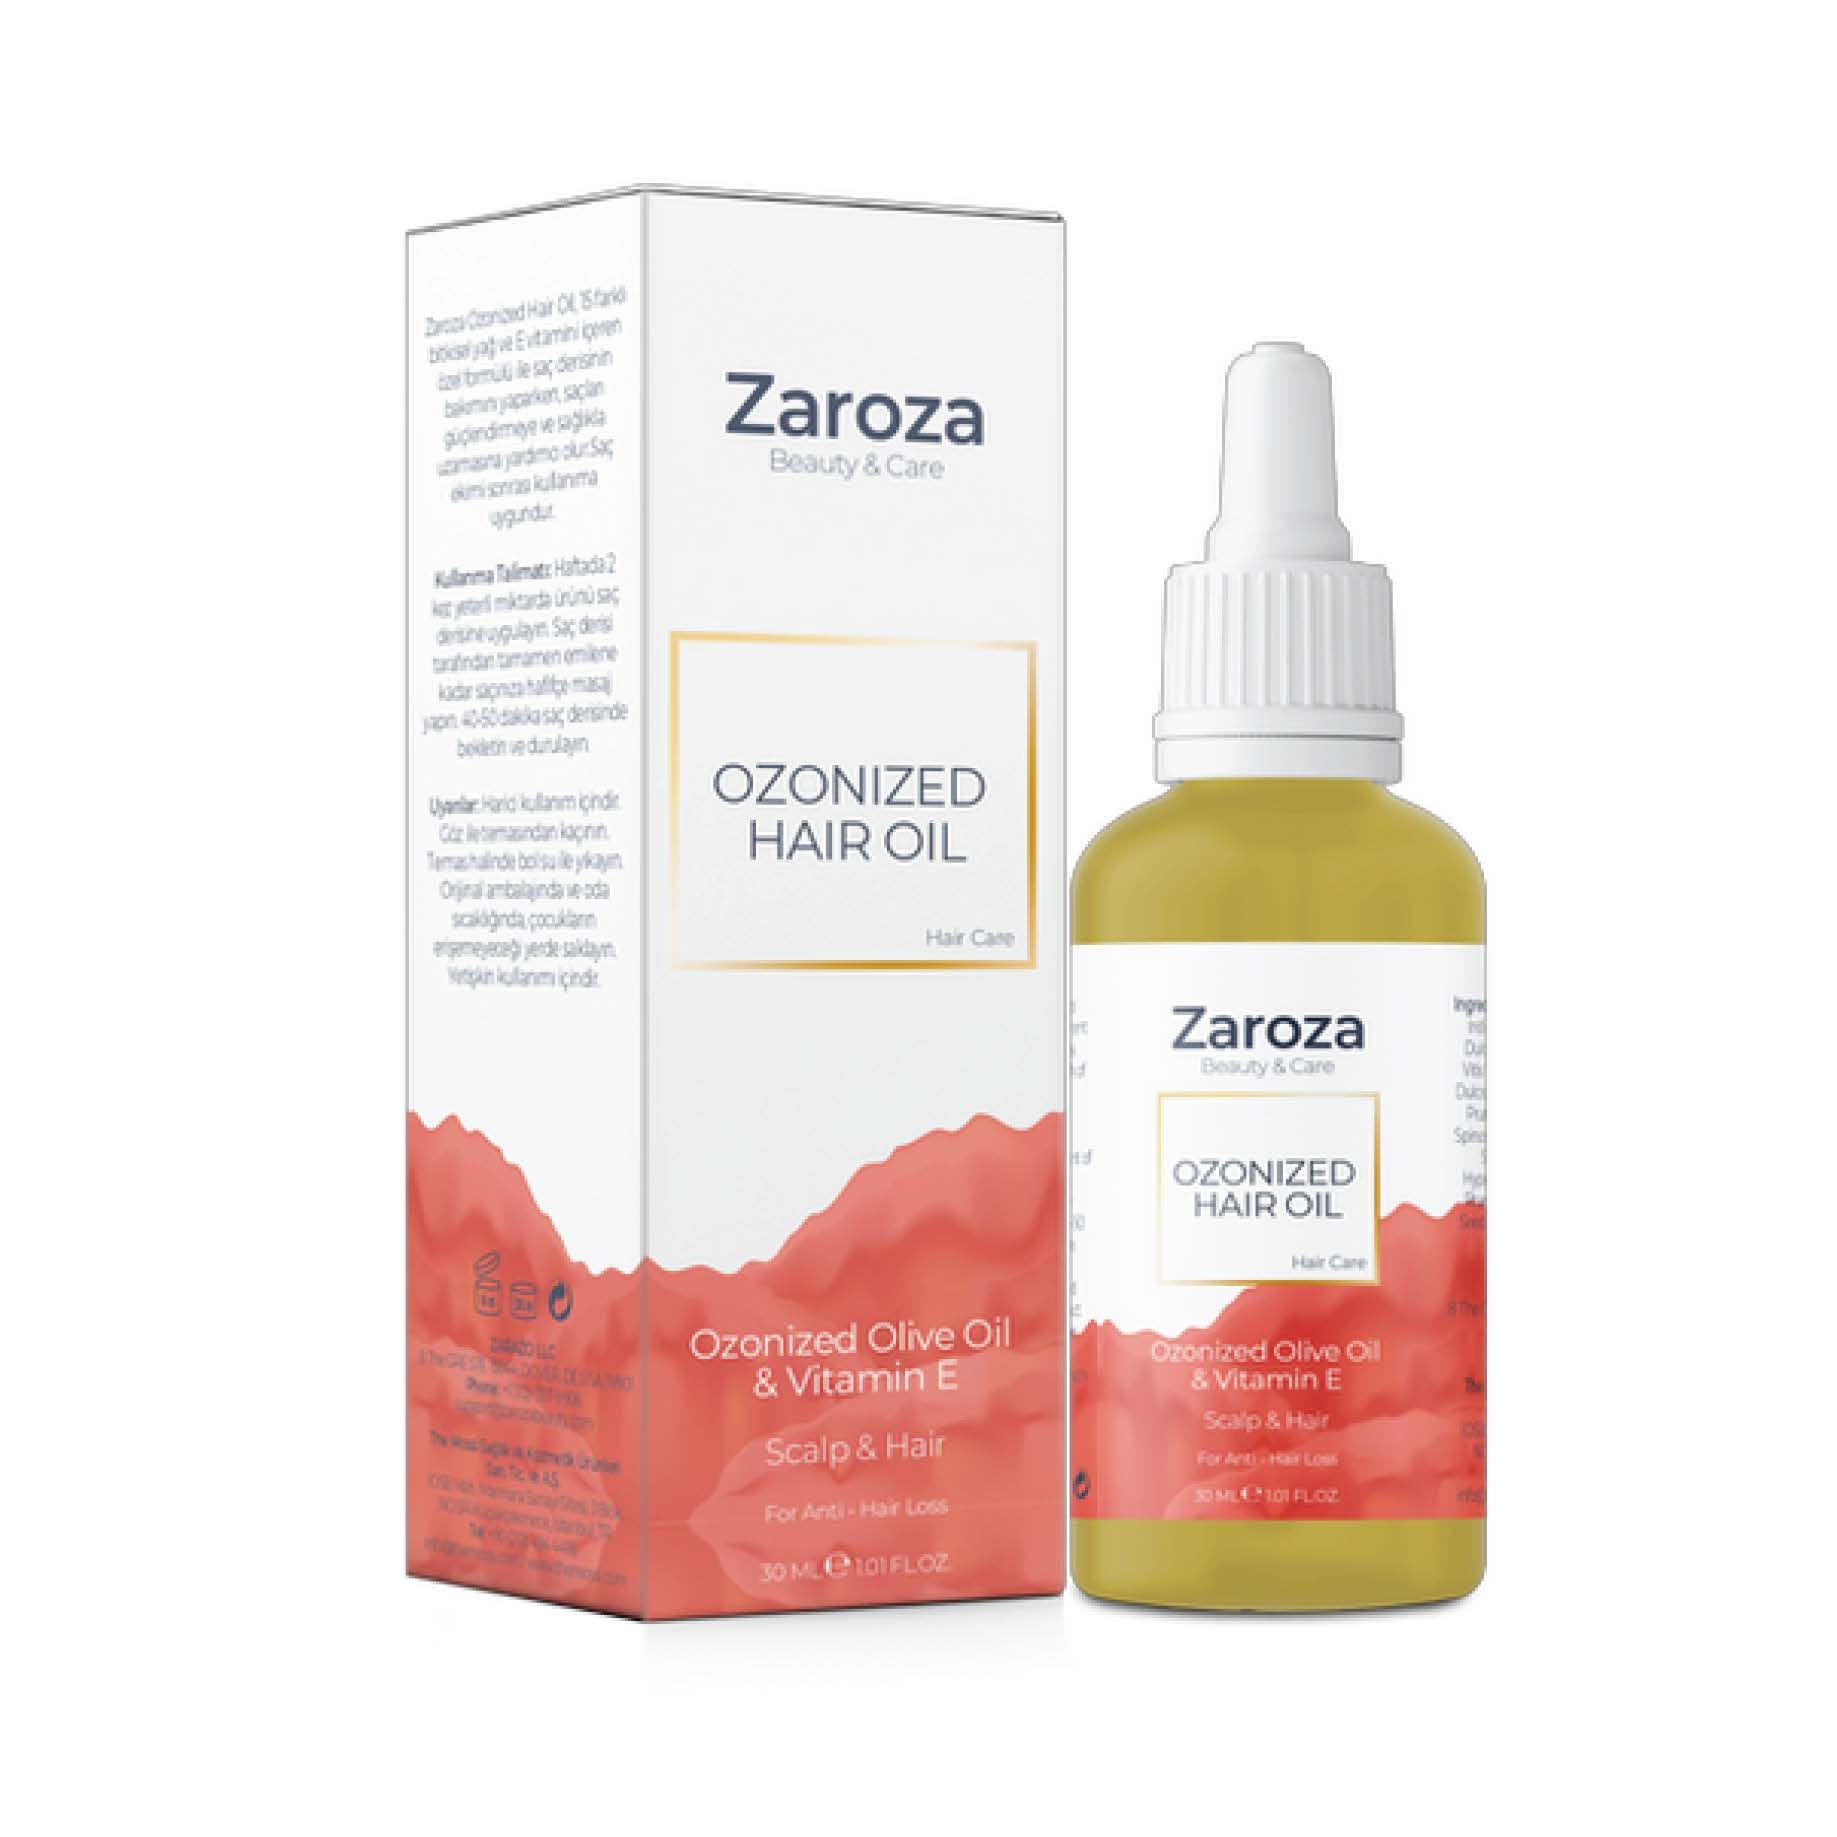 Zaroza Ozonized Hair Oil